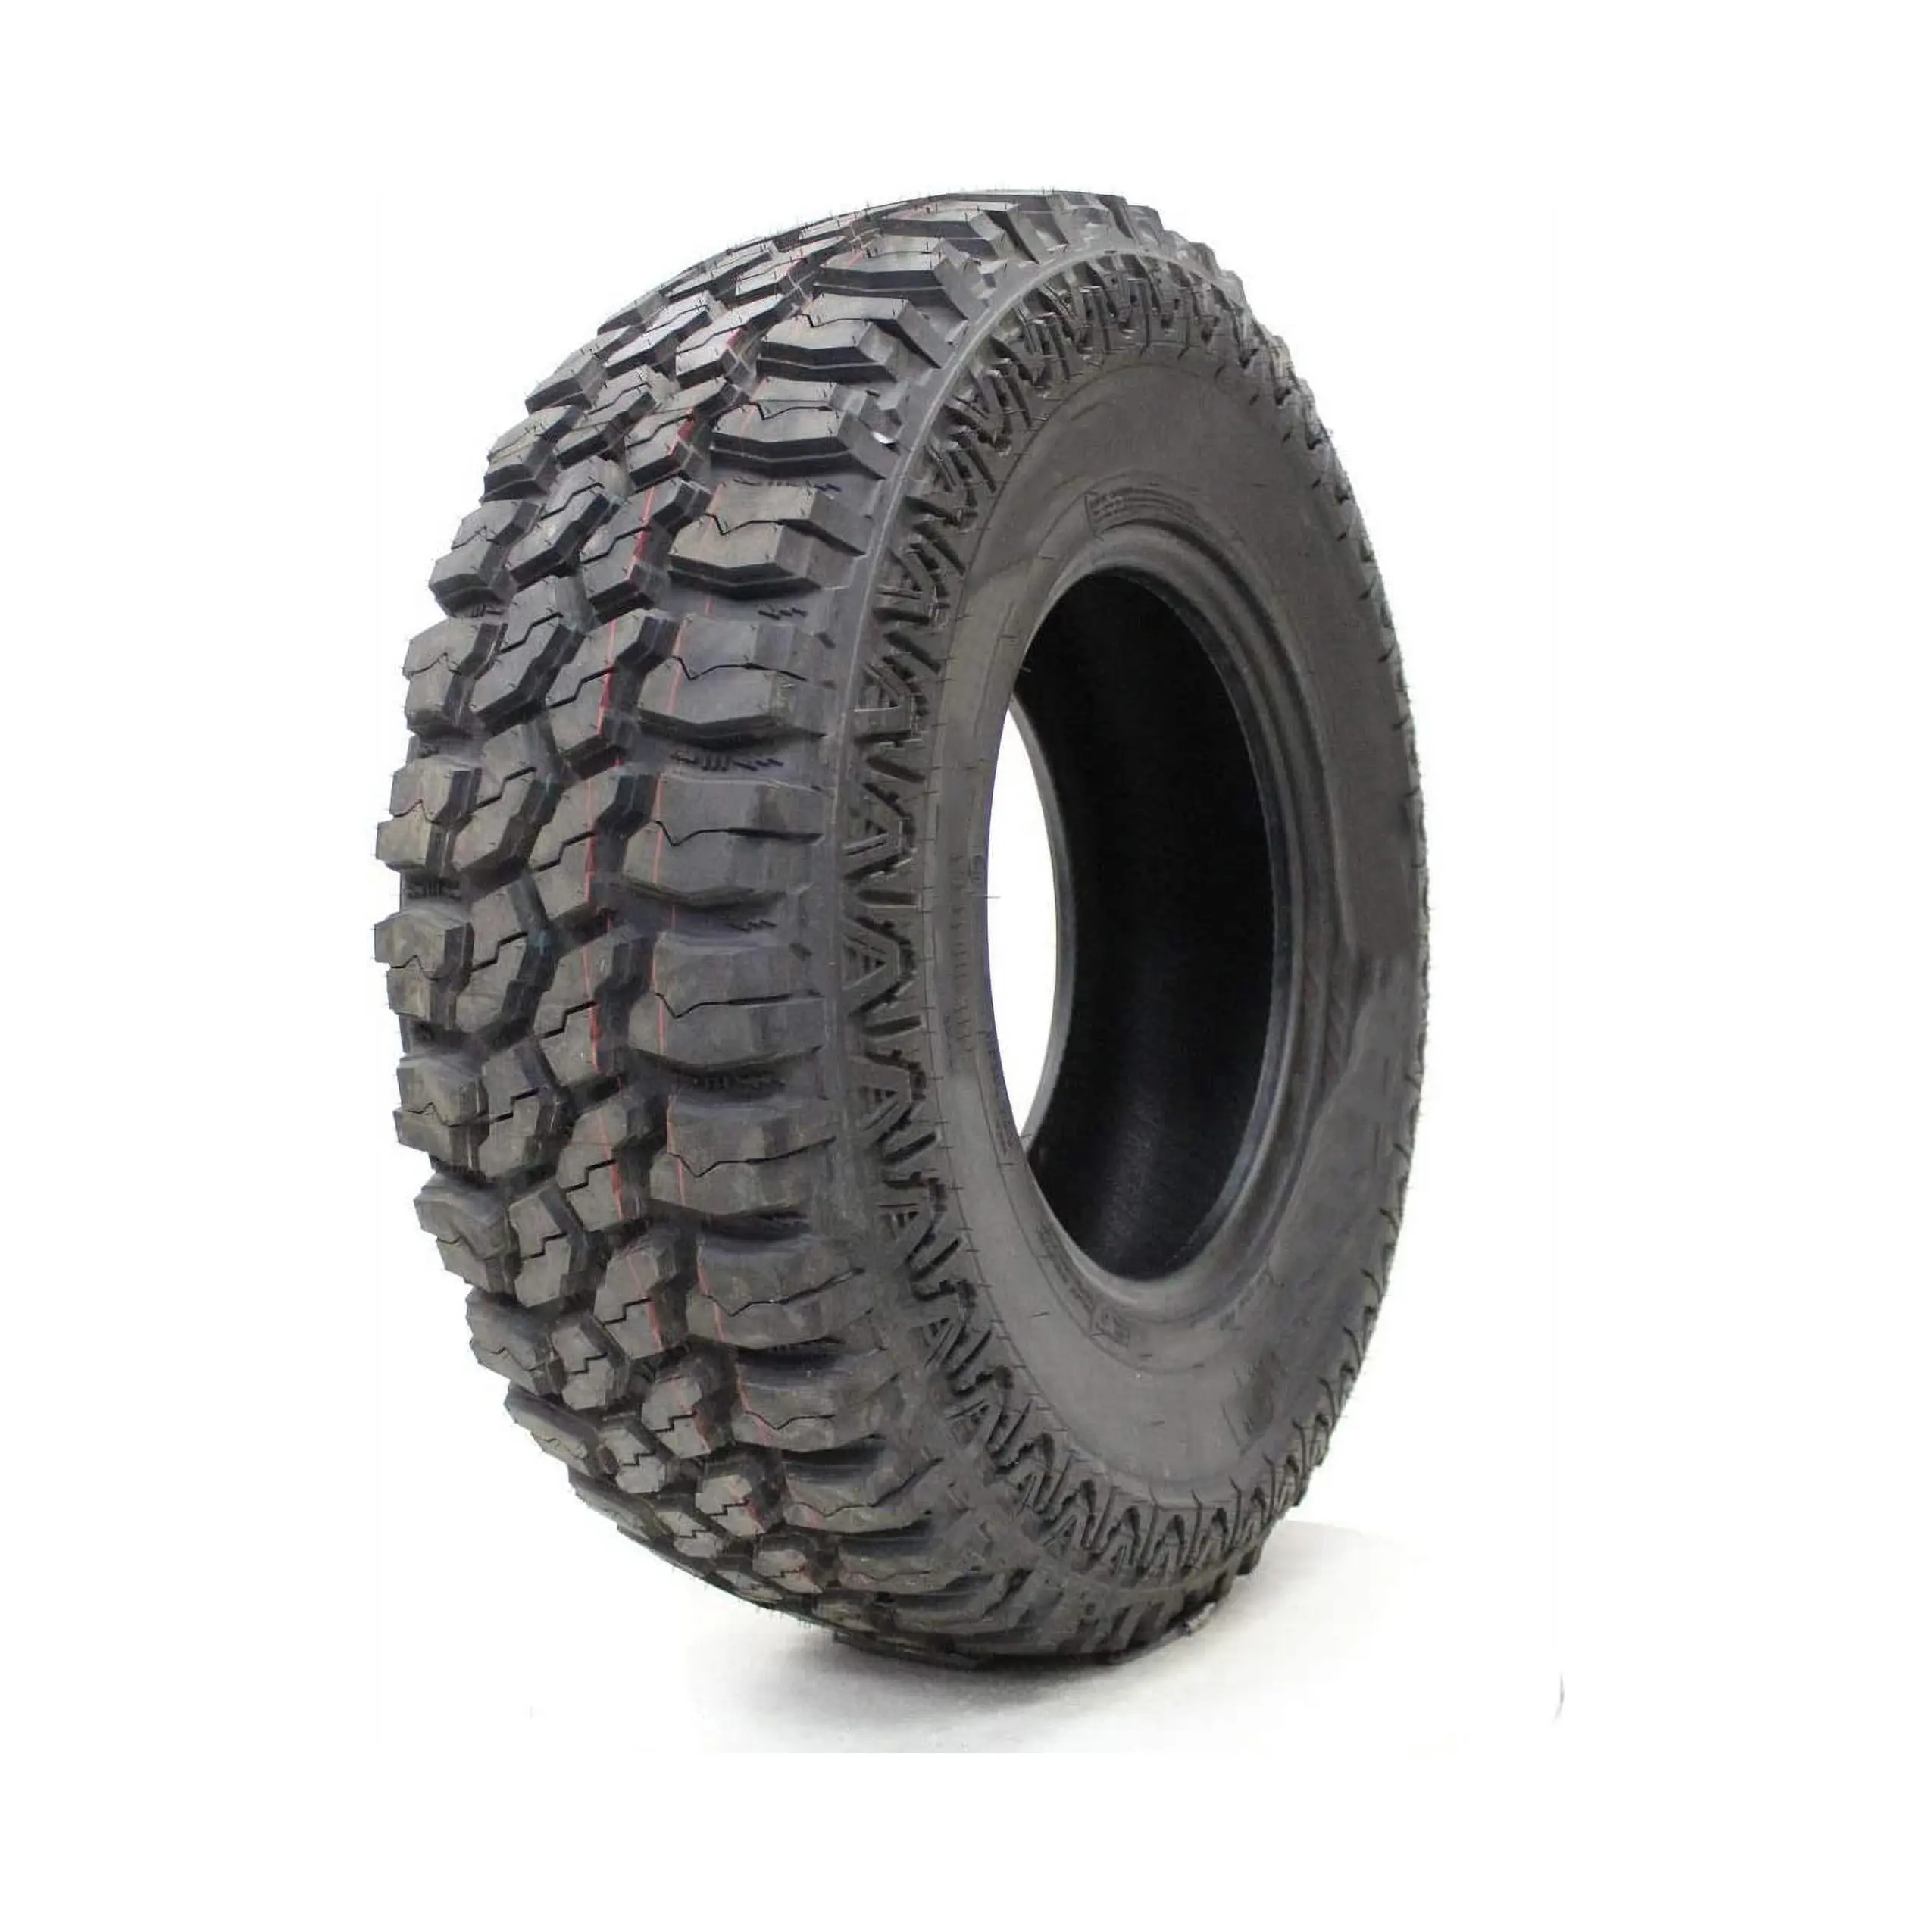 최고의 등급 235 85r16 트럭 타이어 원래 새로운 타이어 트럭 타이어 가능